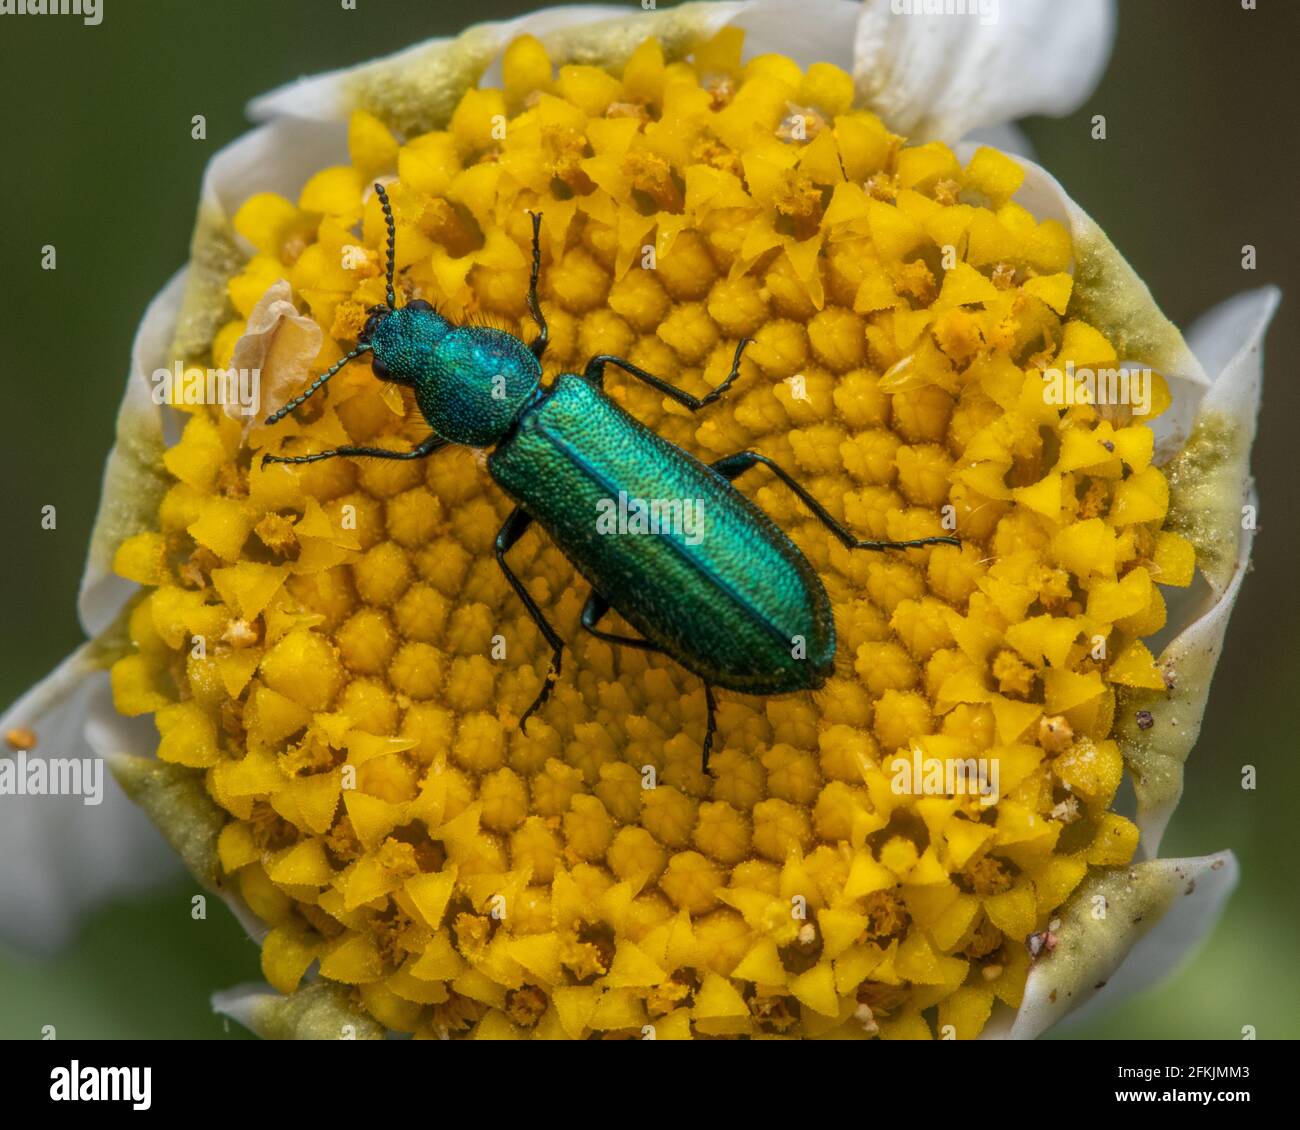 A Spanish fly on a daisy flower in a garden, feeding on nectar Stock Photo